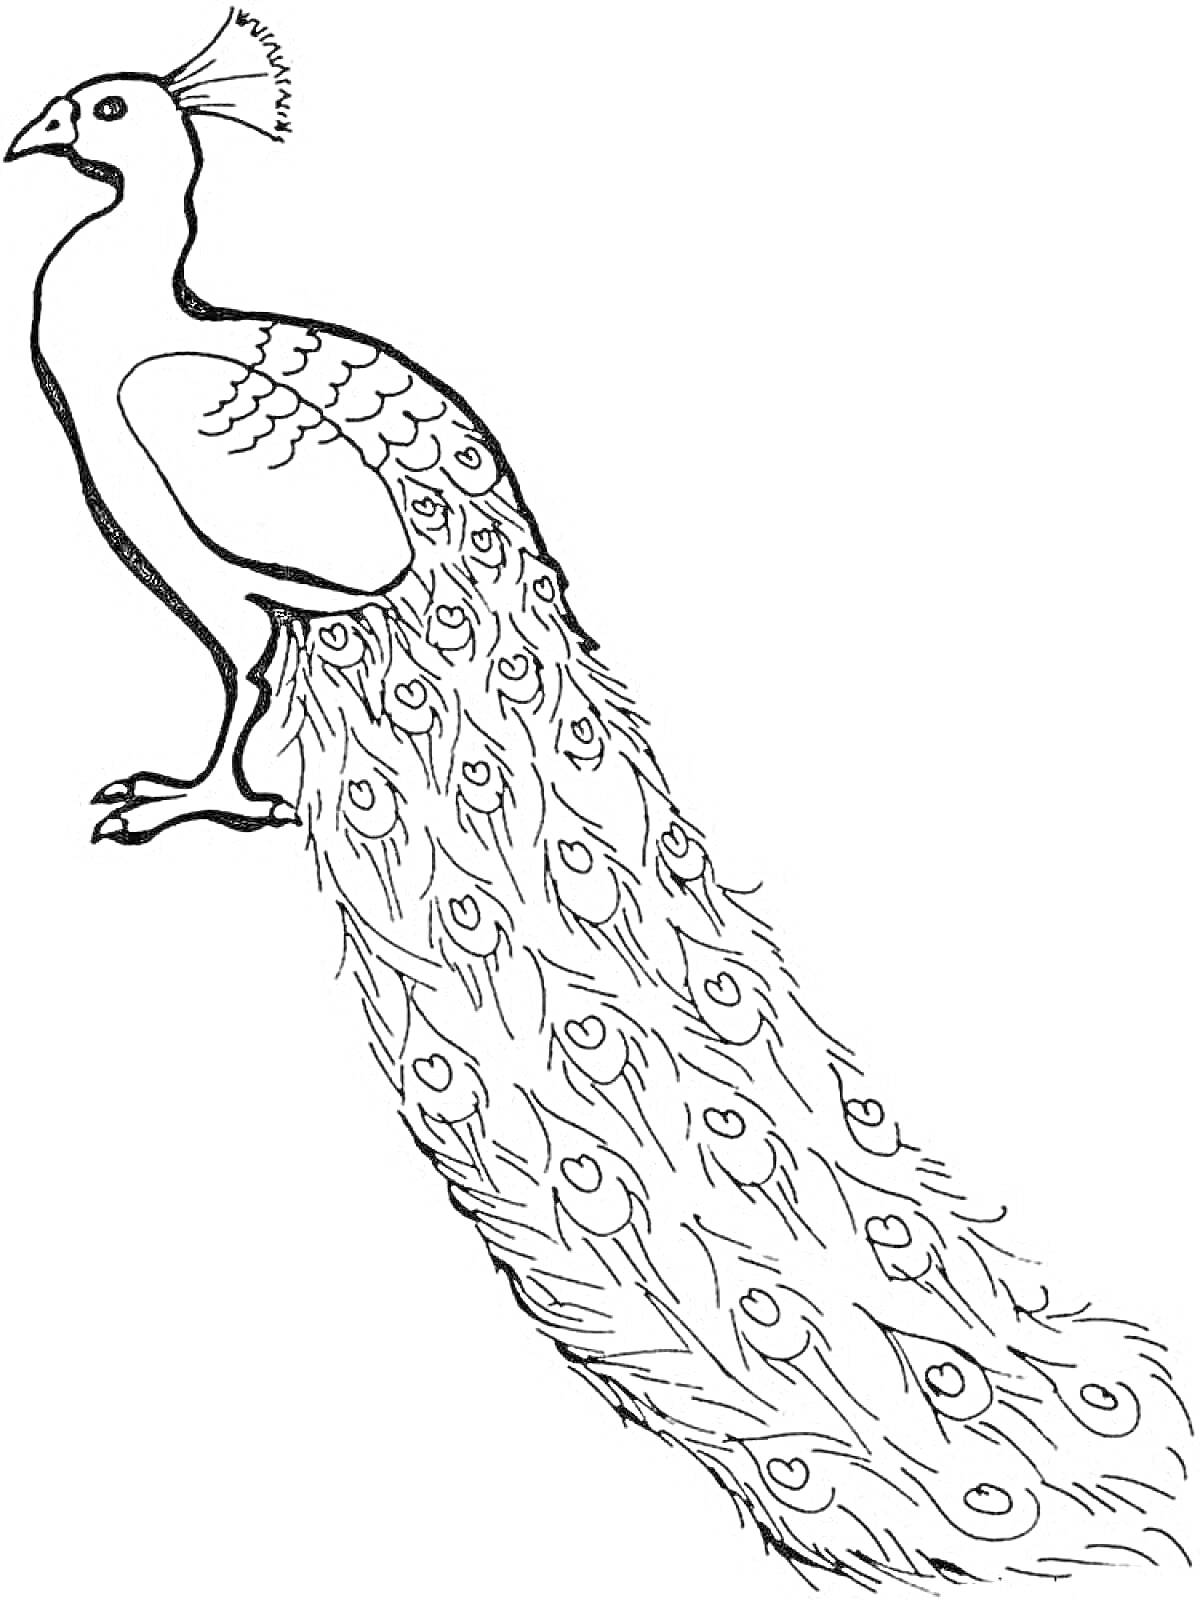 Раскраска павлин с распущенным хвостом, павлин со сложенными крыльями, павлин в профиль, павлин с длинными перьями на хвосте